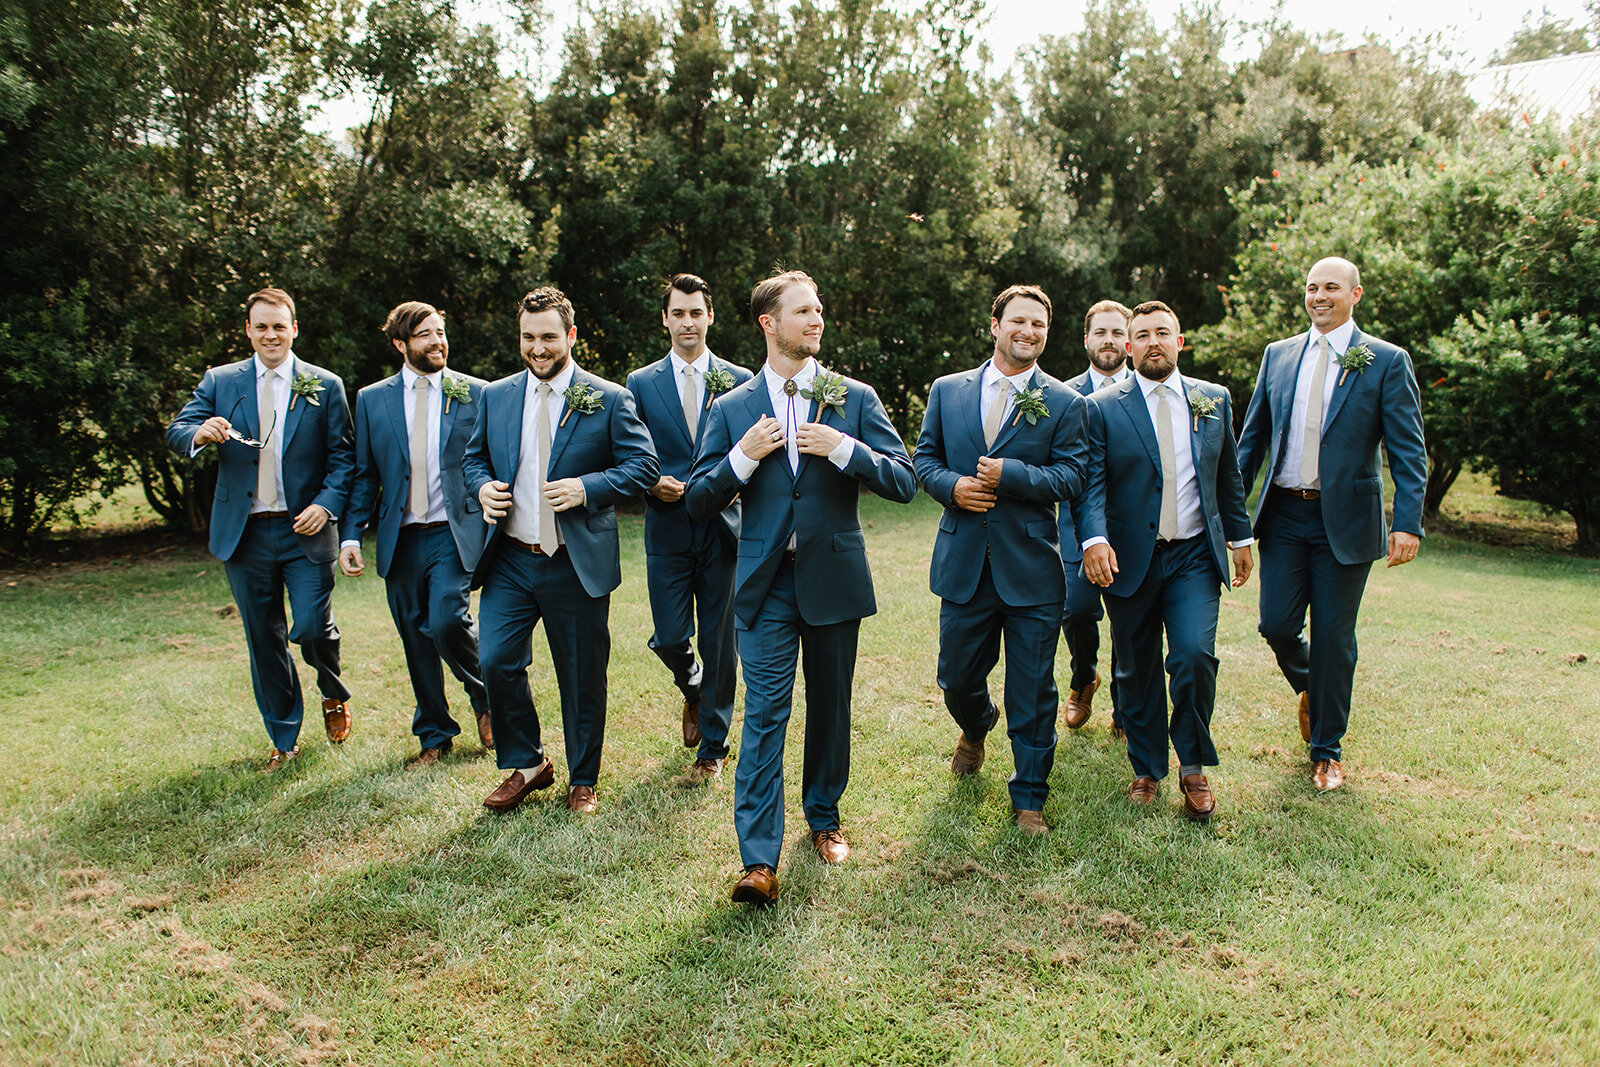  groom and groomsmen in blue suits 